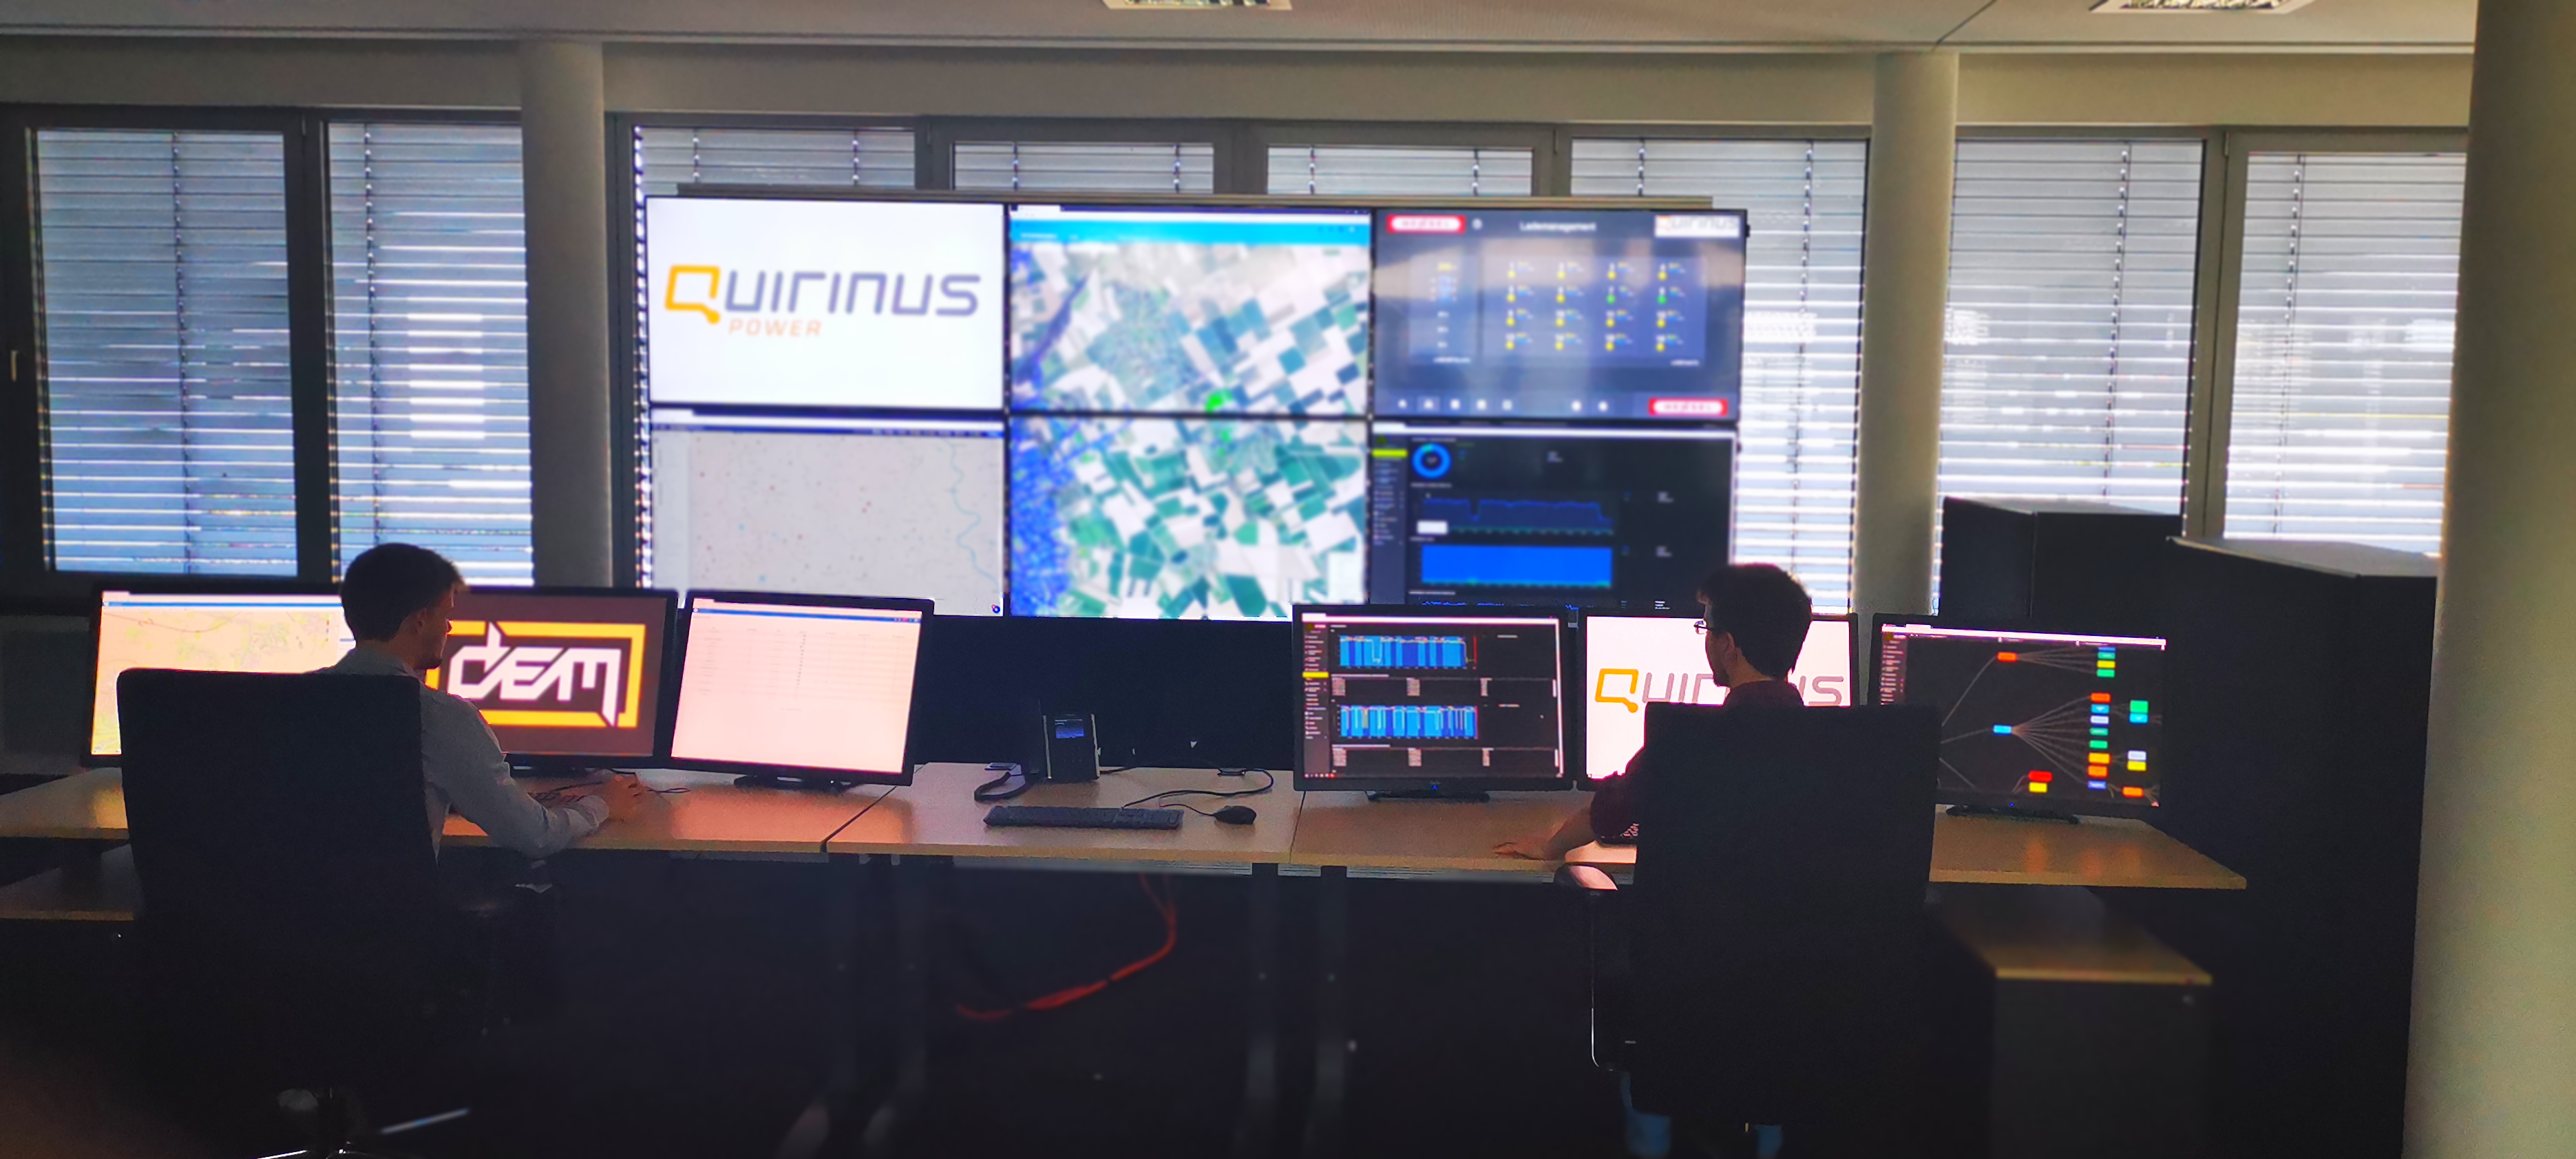 Quirinus Control Center in Heppendorf